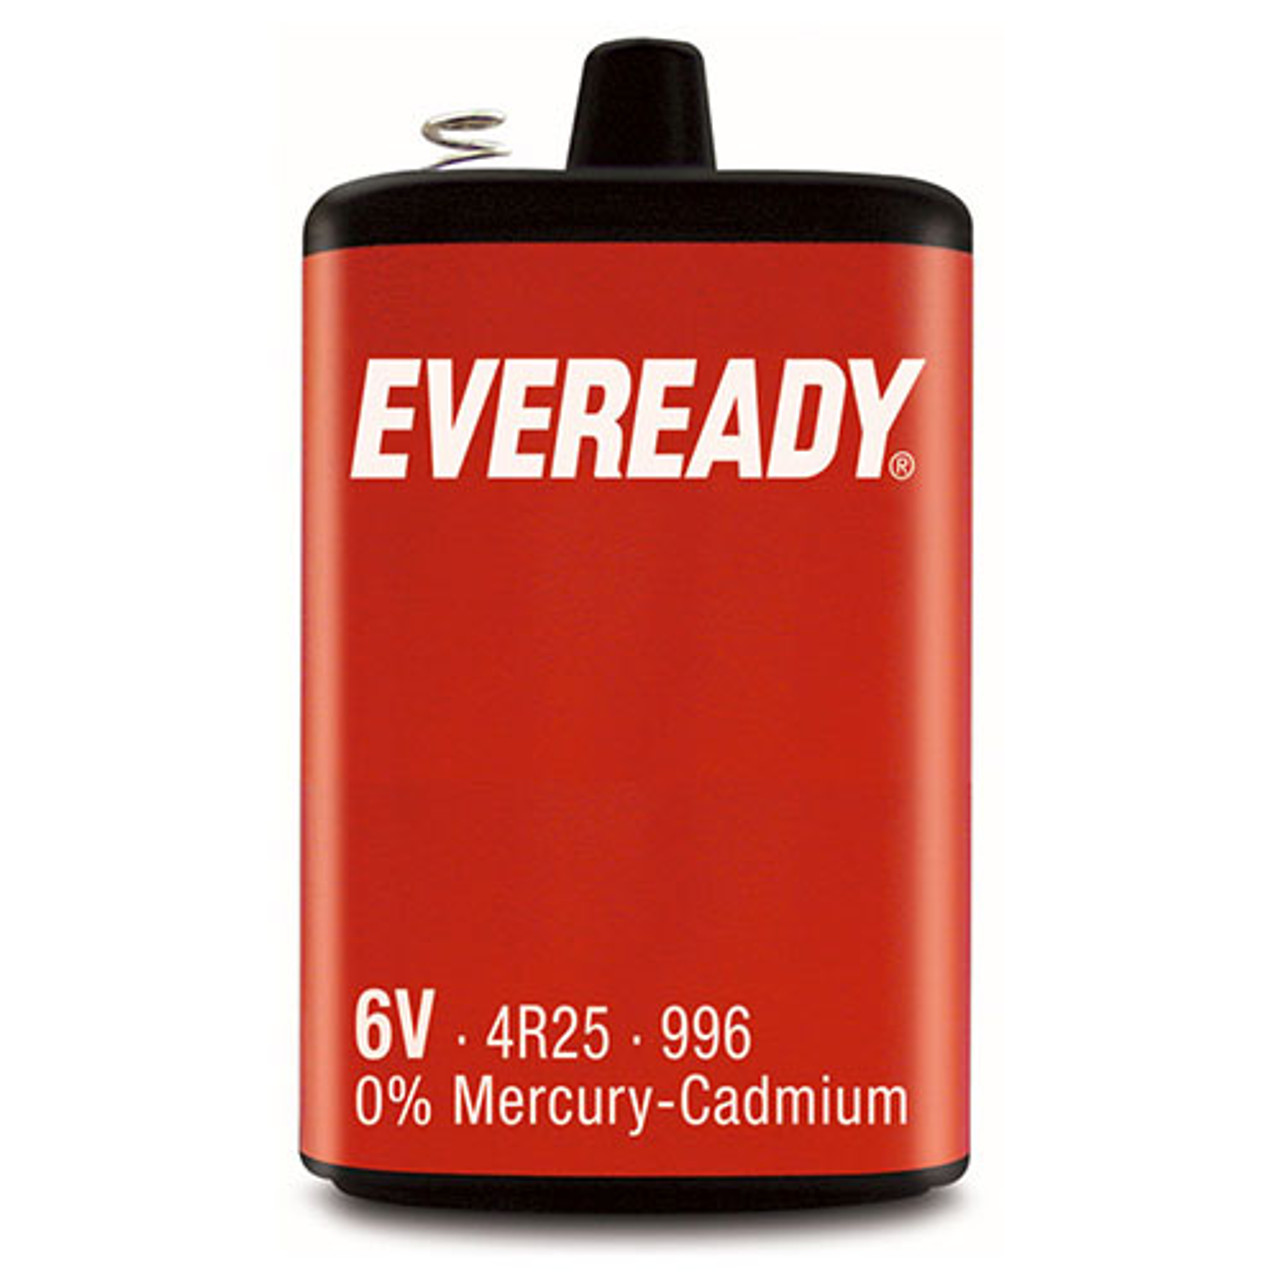 Меркурий батарейки. Eveready Battery 4r25. Батарейка 6в 4r25. Батарея 4r25 6v. Батарейки Mercury cadmium.